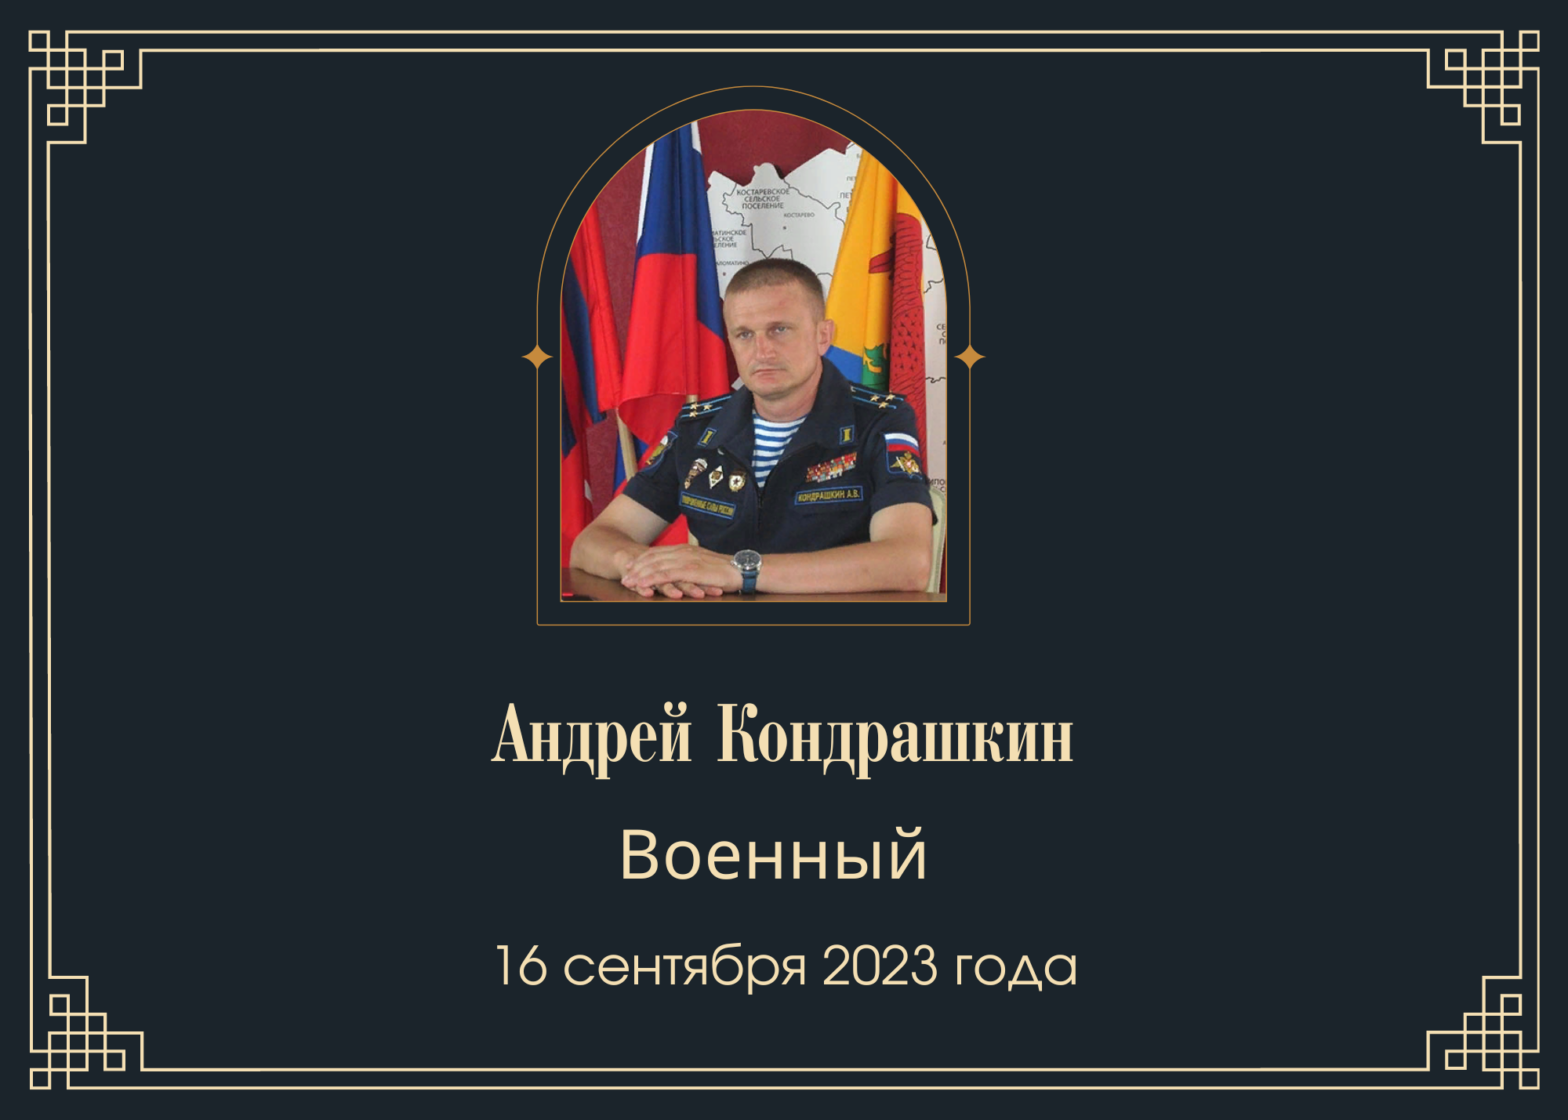 Погиб полковник Андрей Кондрашкин